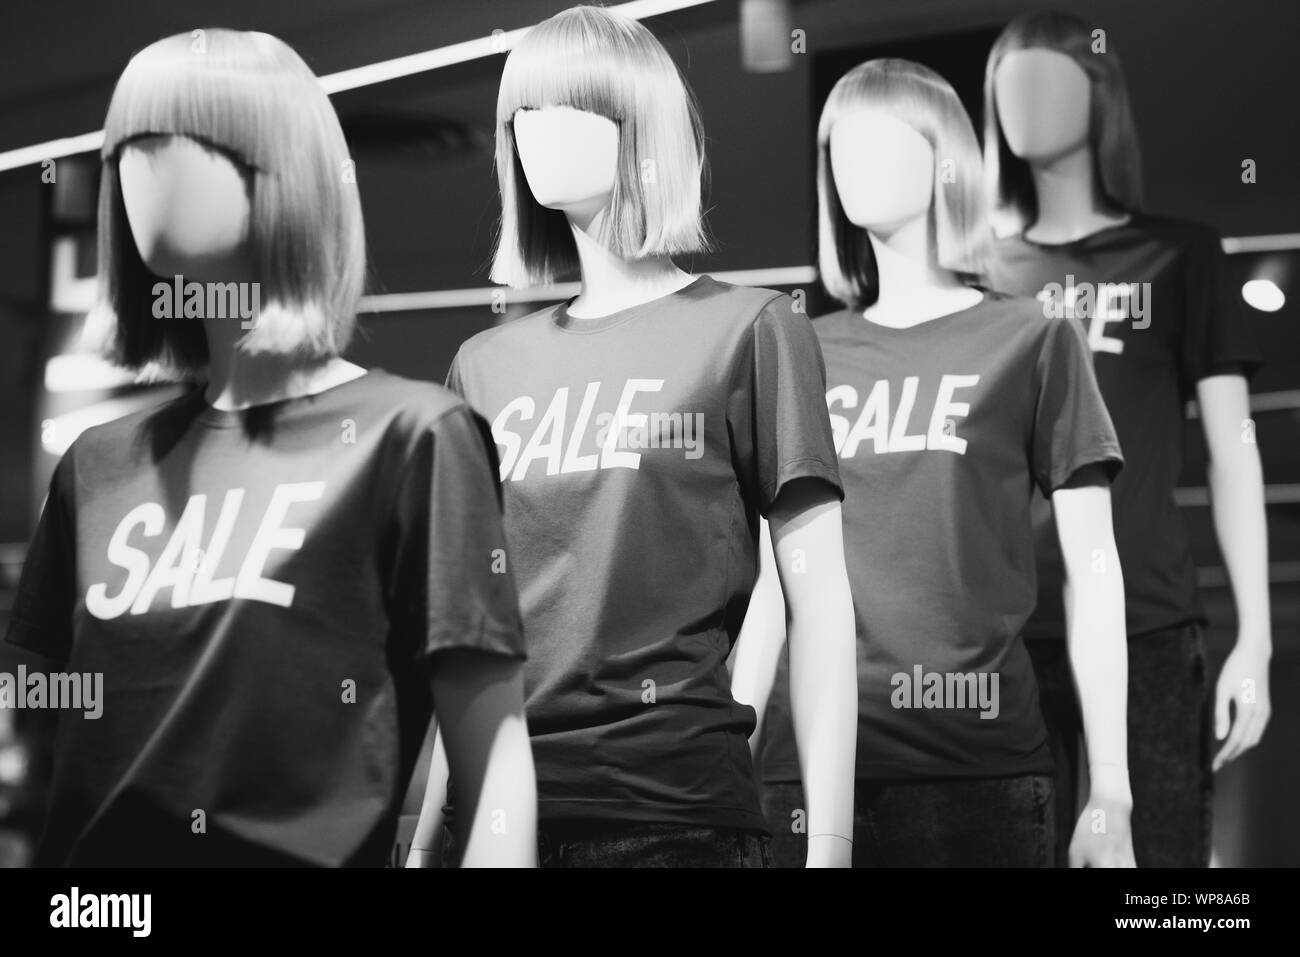 Manichini femmina in T-shirt con l'iscrizione "ale" annunciando sconti presso un centro commerciale per lo shopping. Foto in bianco e nero. Foto Stock